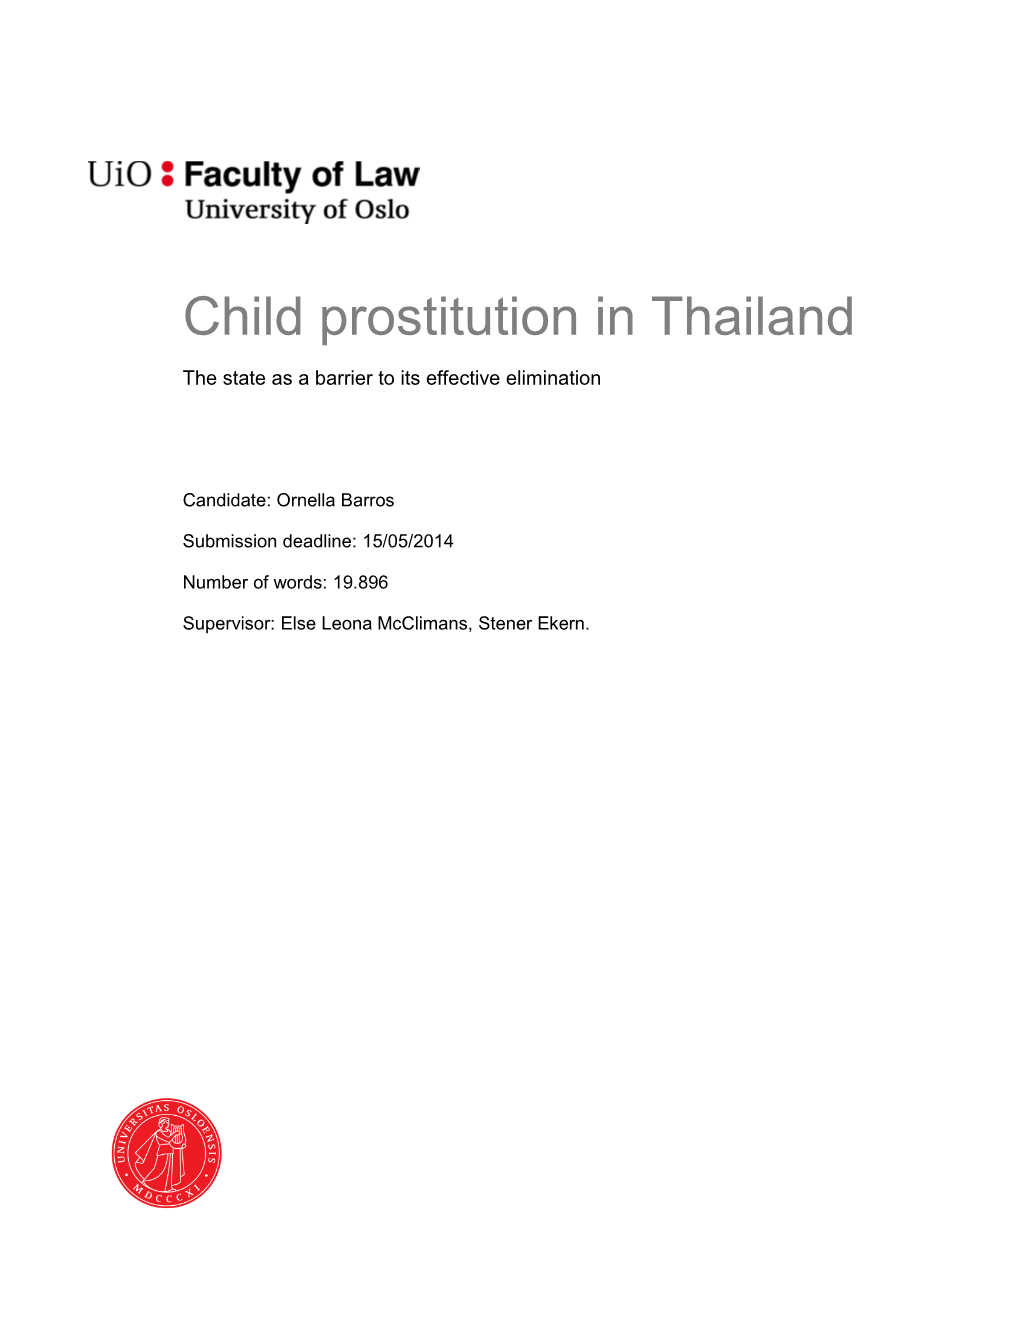 Child Prostitution in Thailand